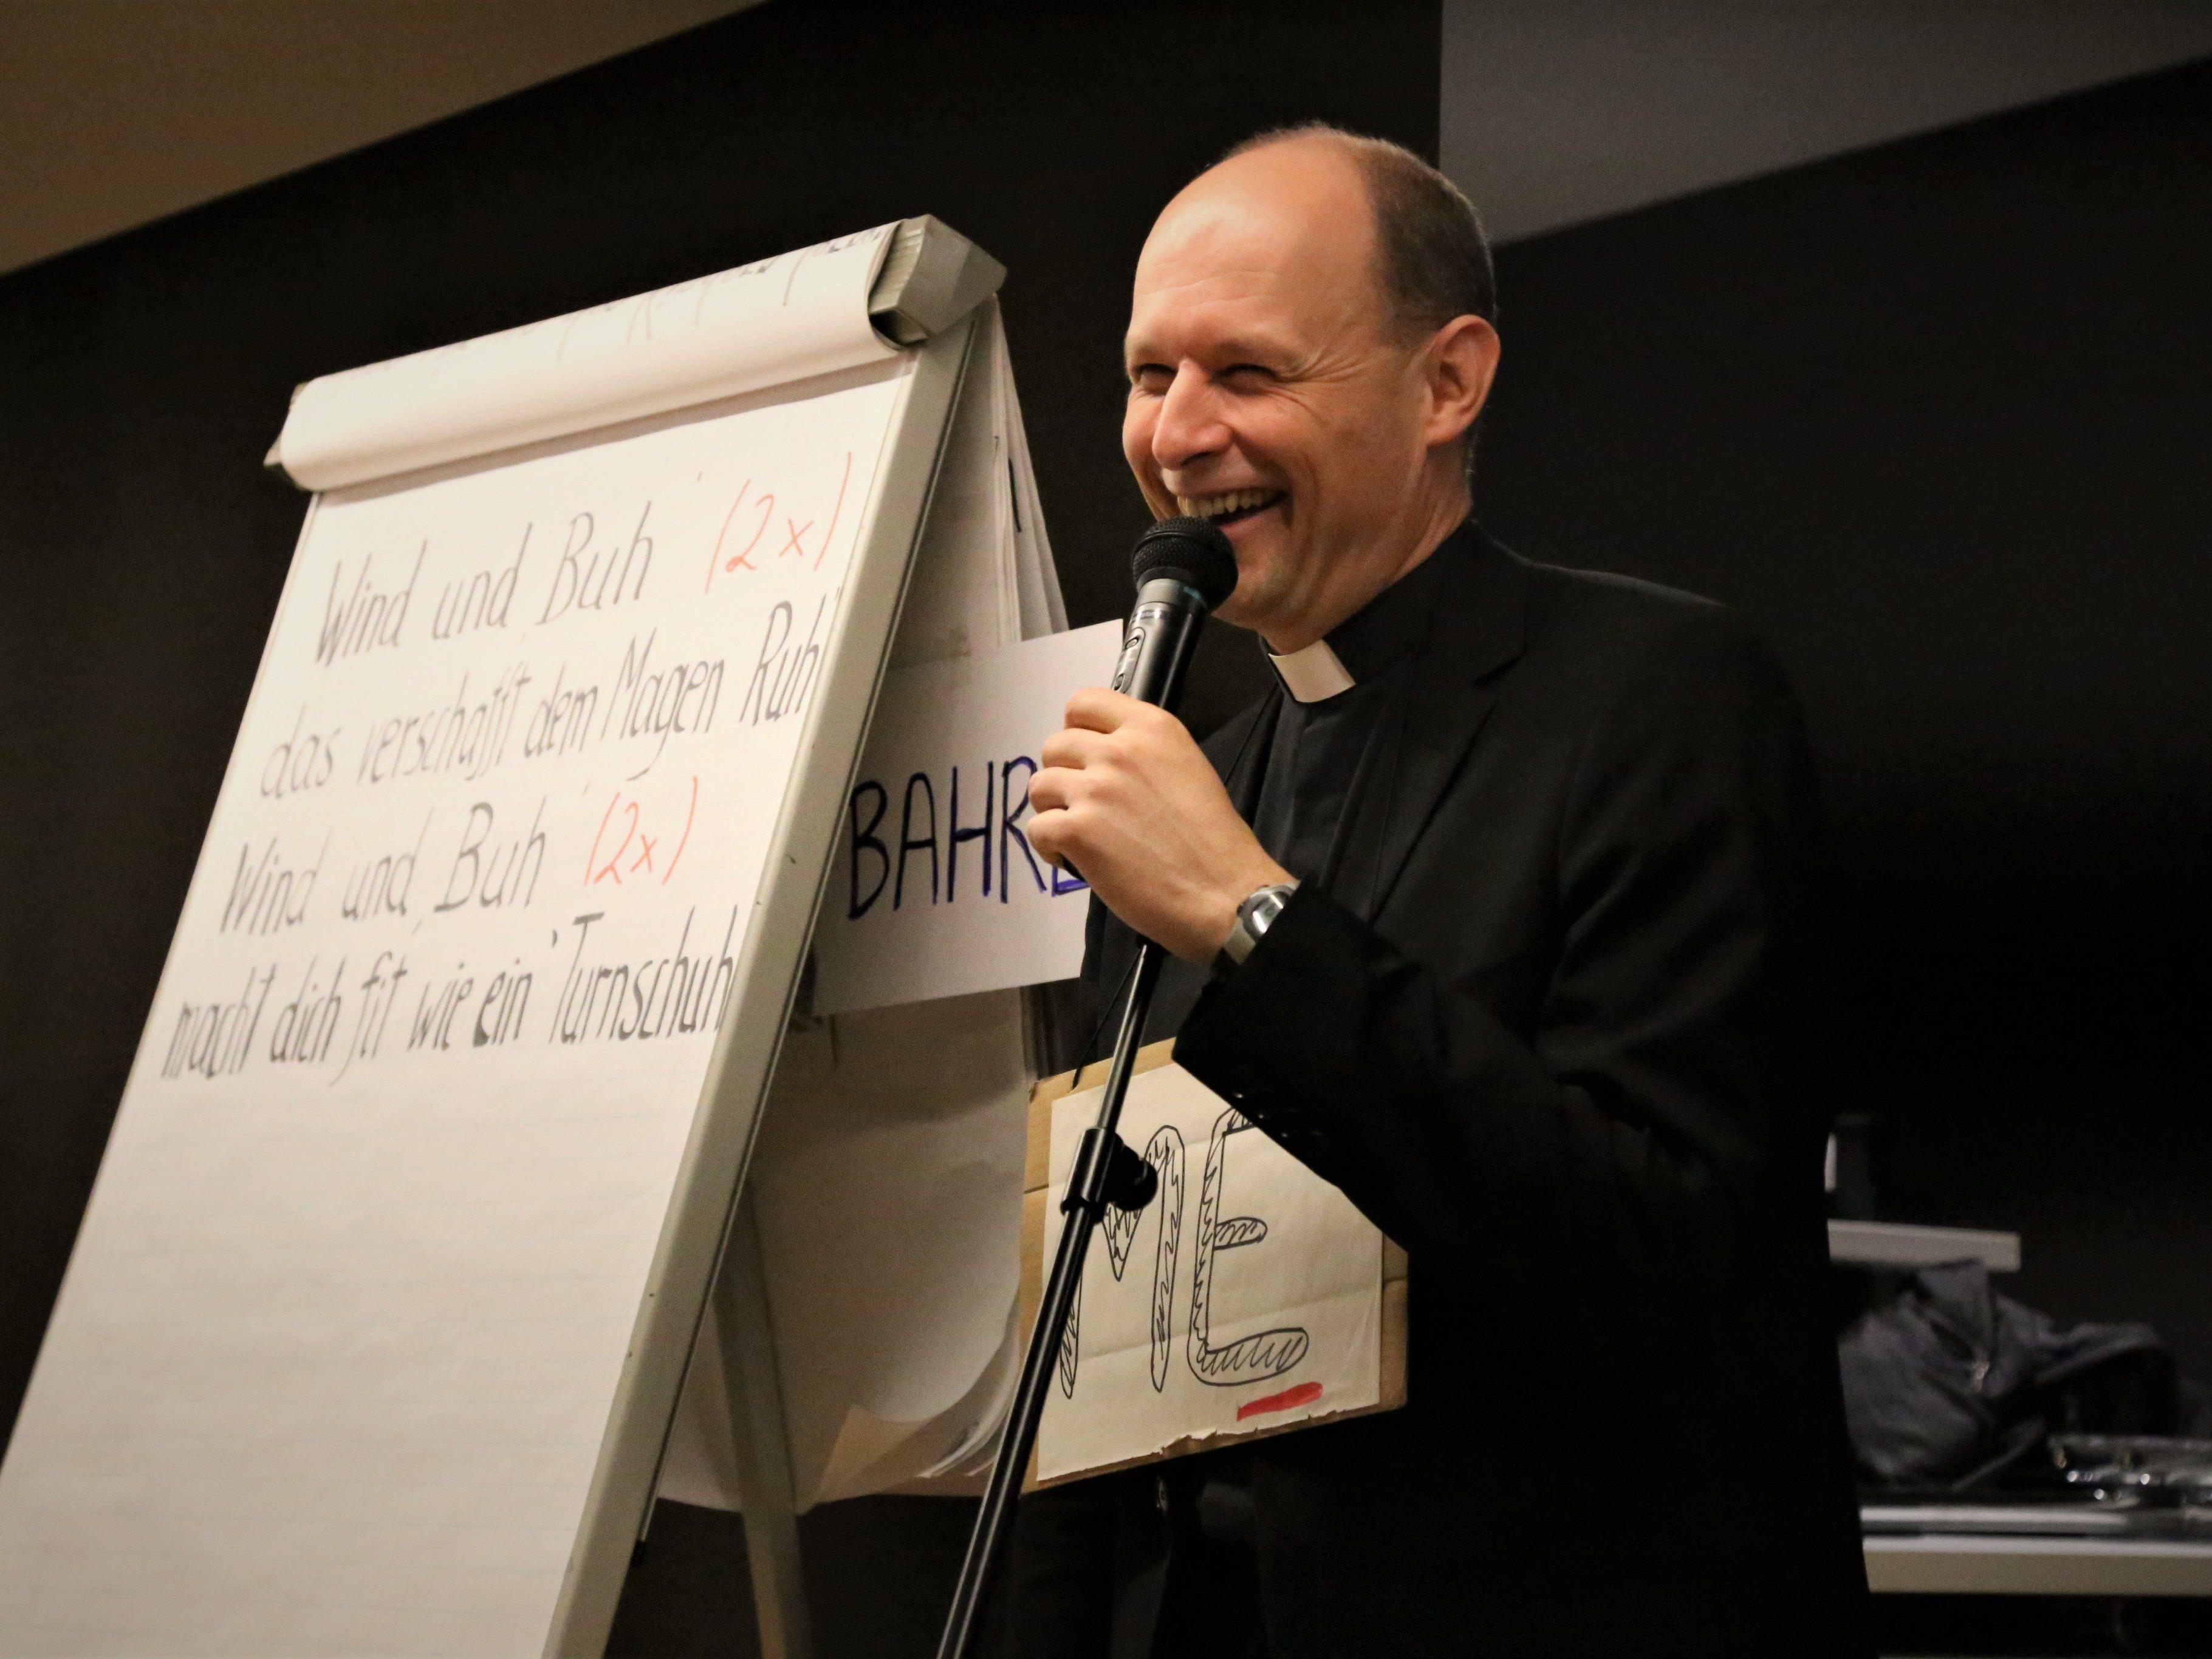 Pfarrer Michael Kopp predigte auf eine humorvolle Art und Weise in Göfis.